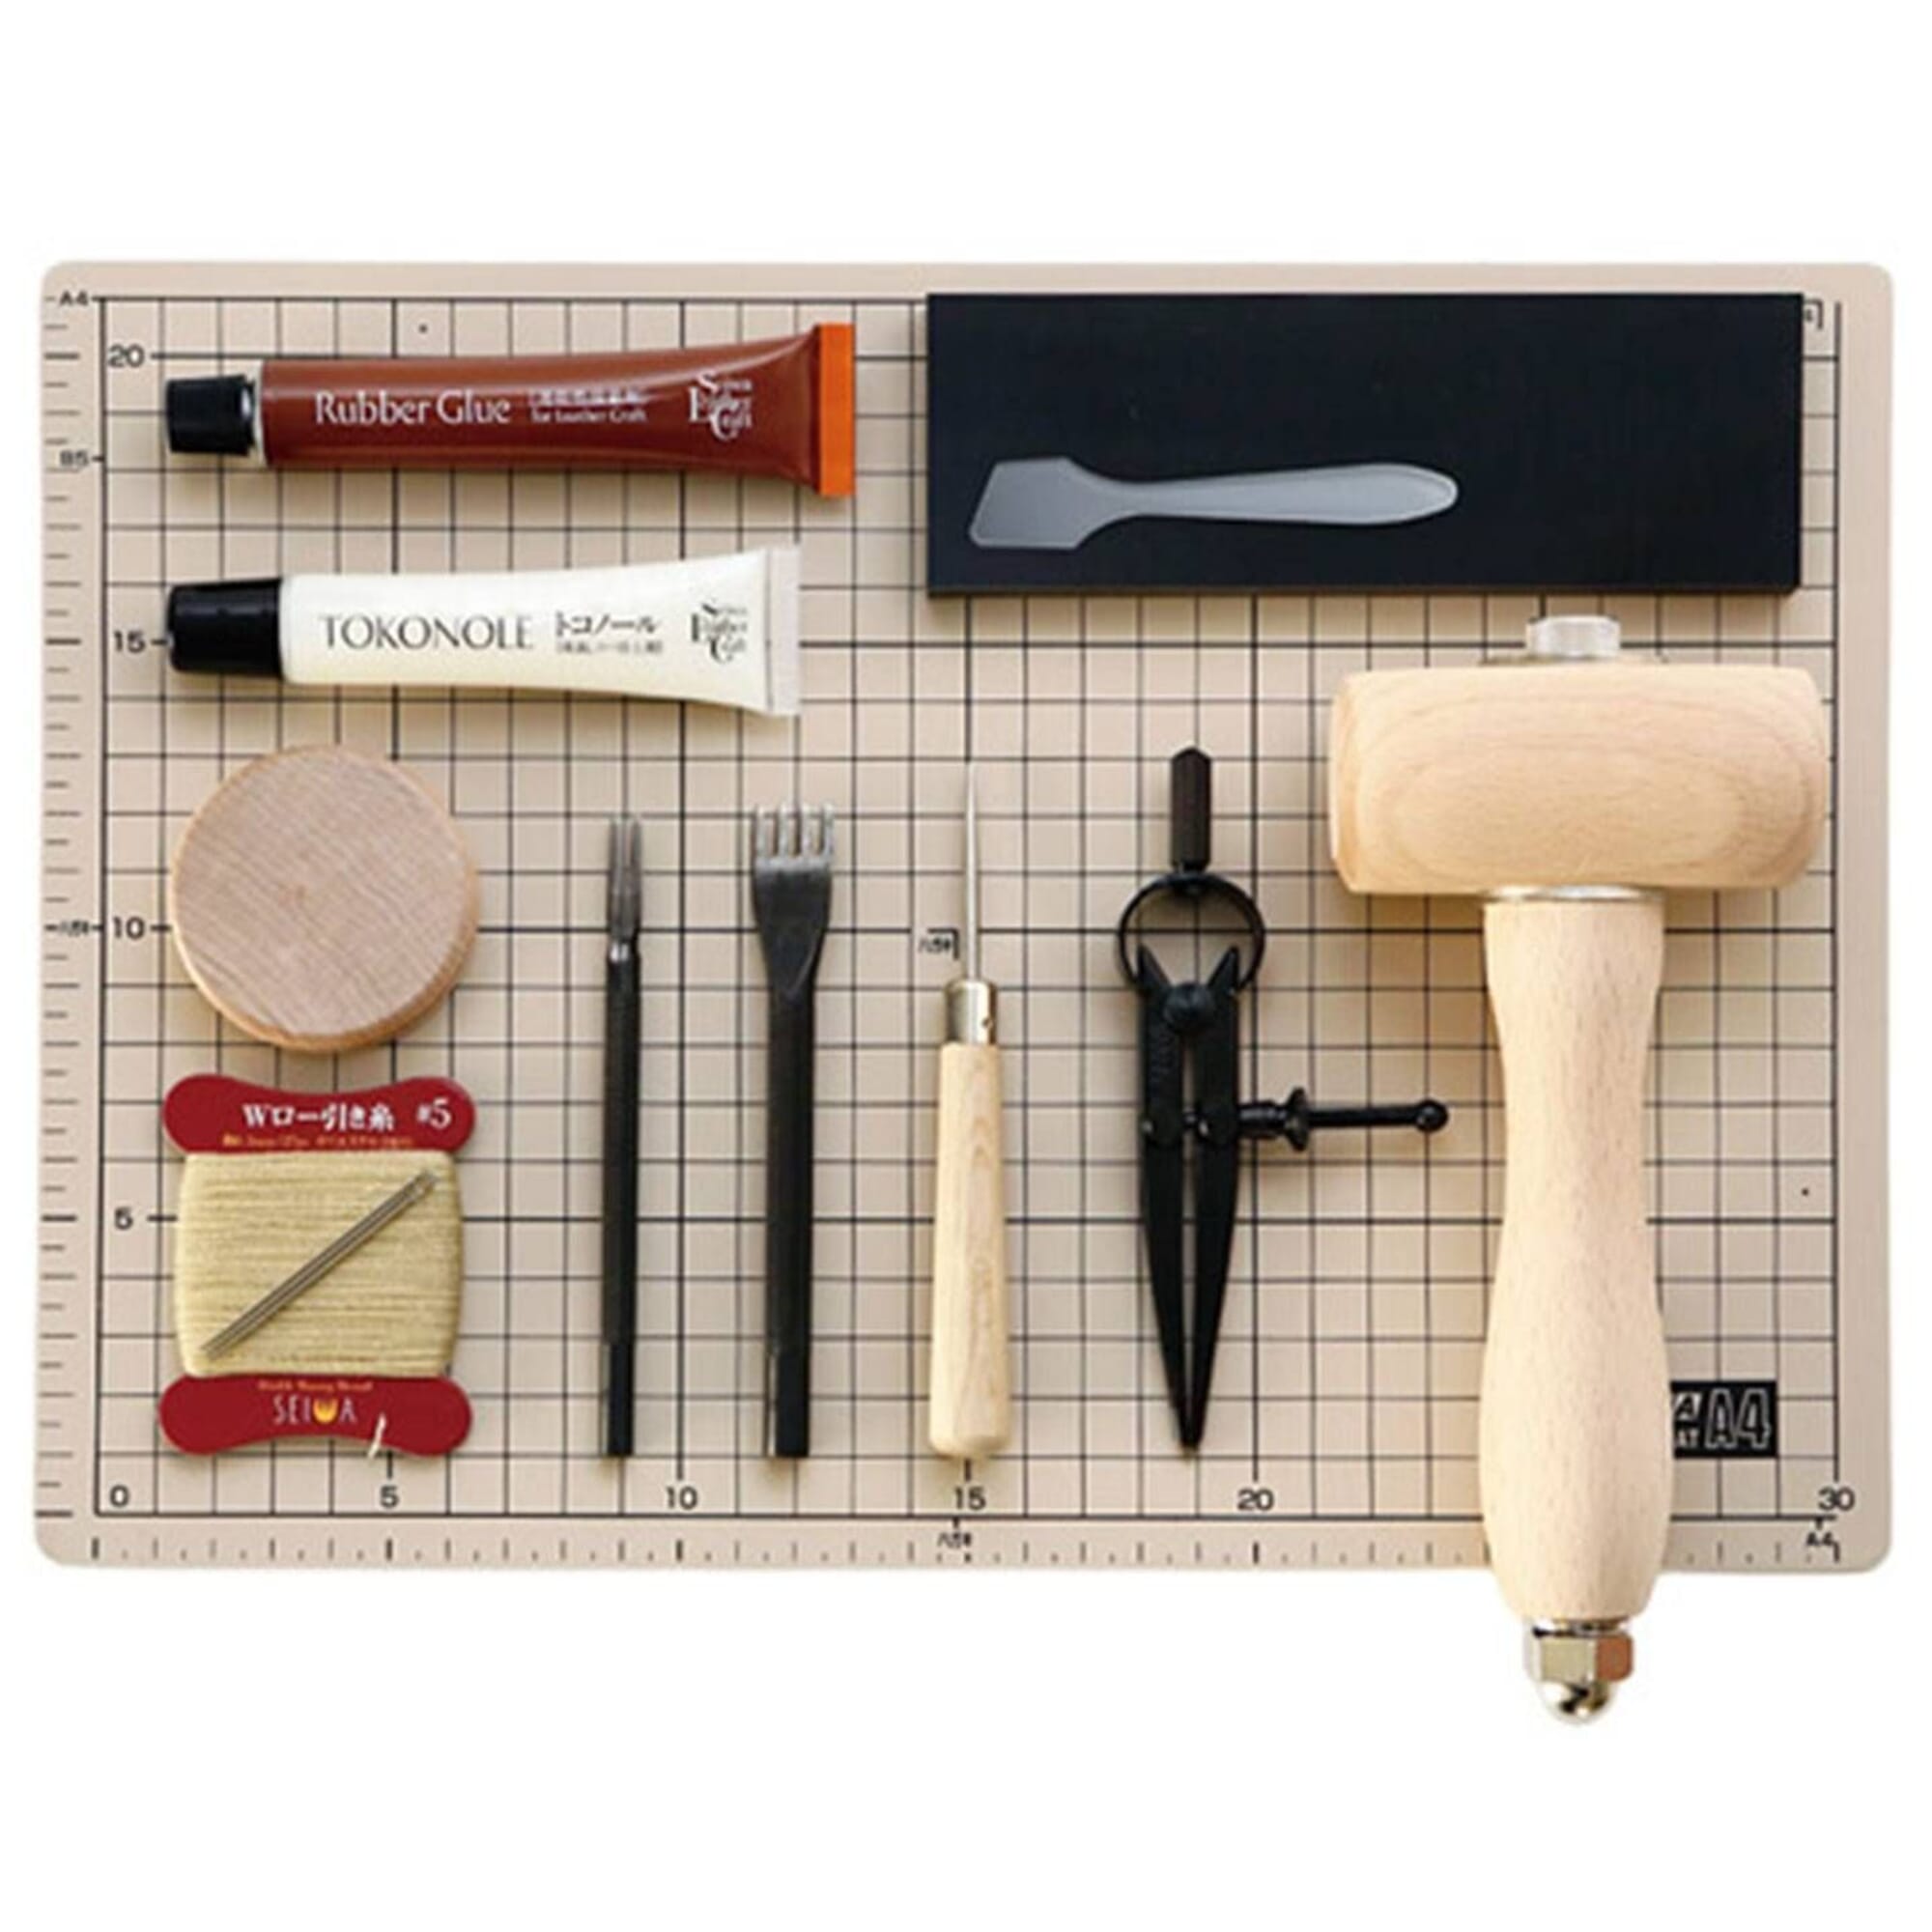 Michihamono Rubber Stamp Making Kit Stamp Carving Tools Starter